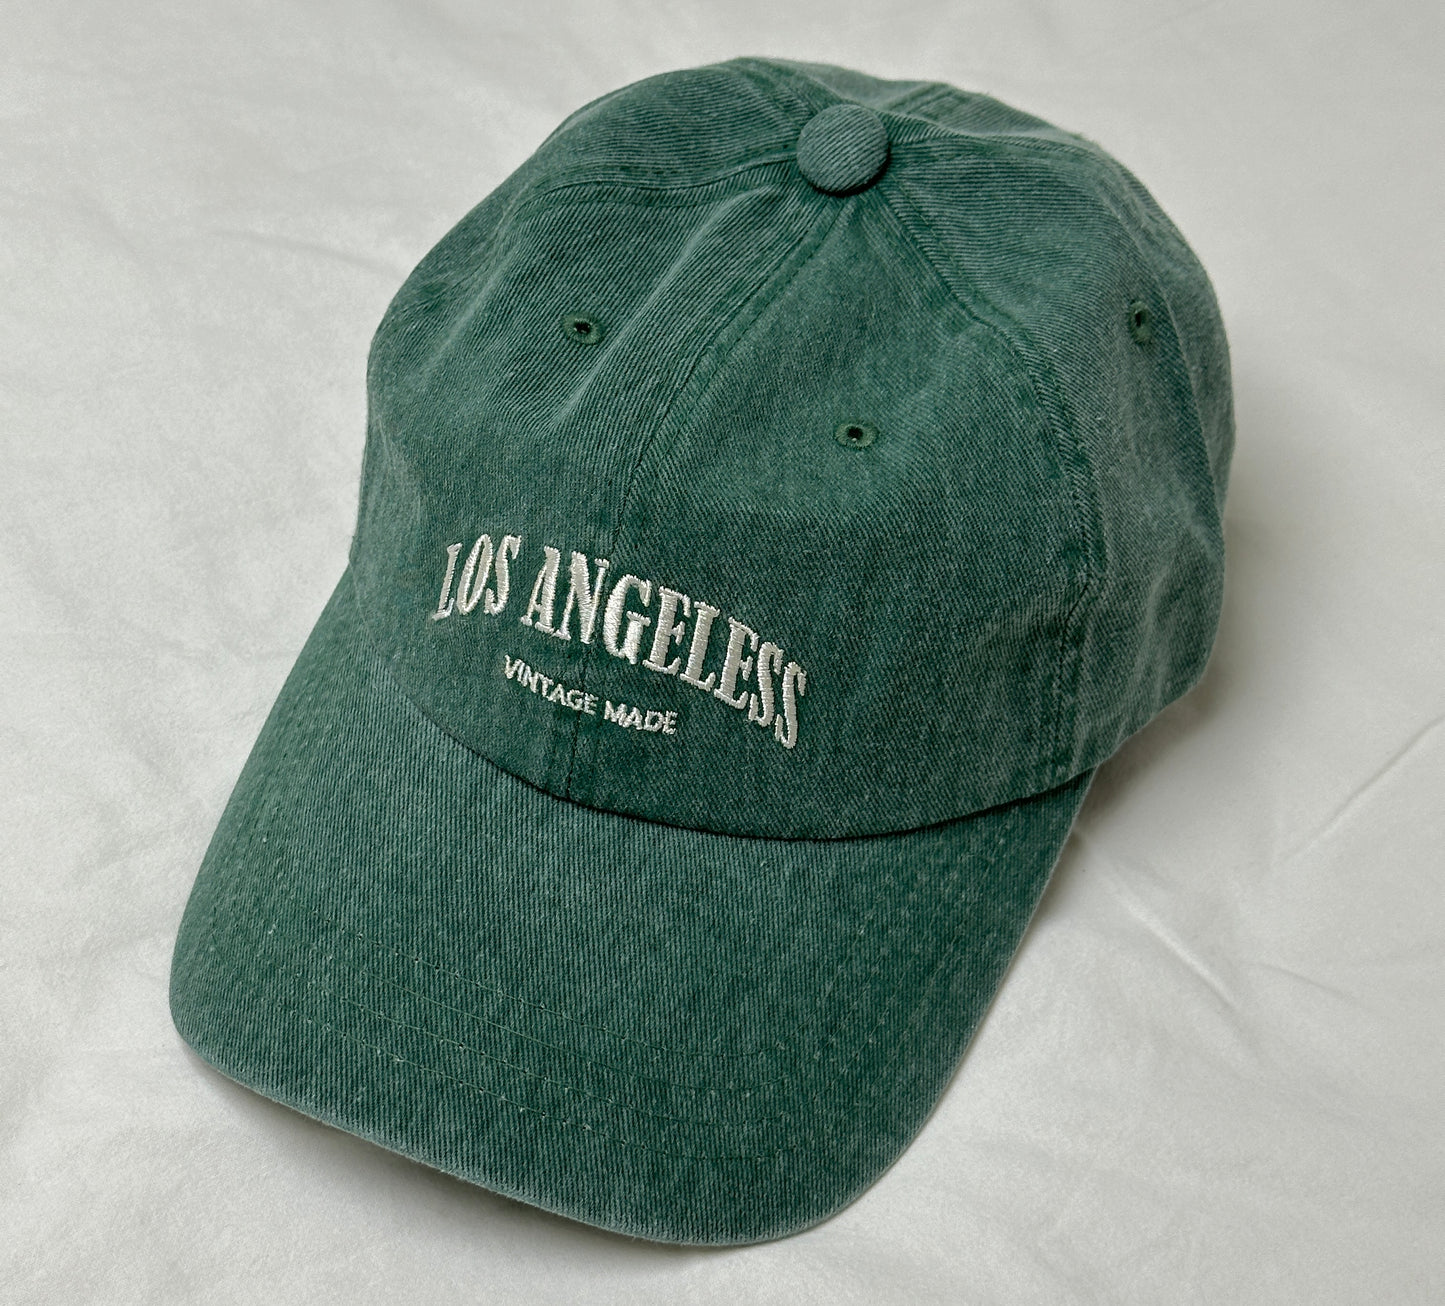 Los Angels Cap 帽